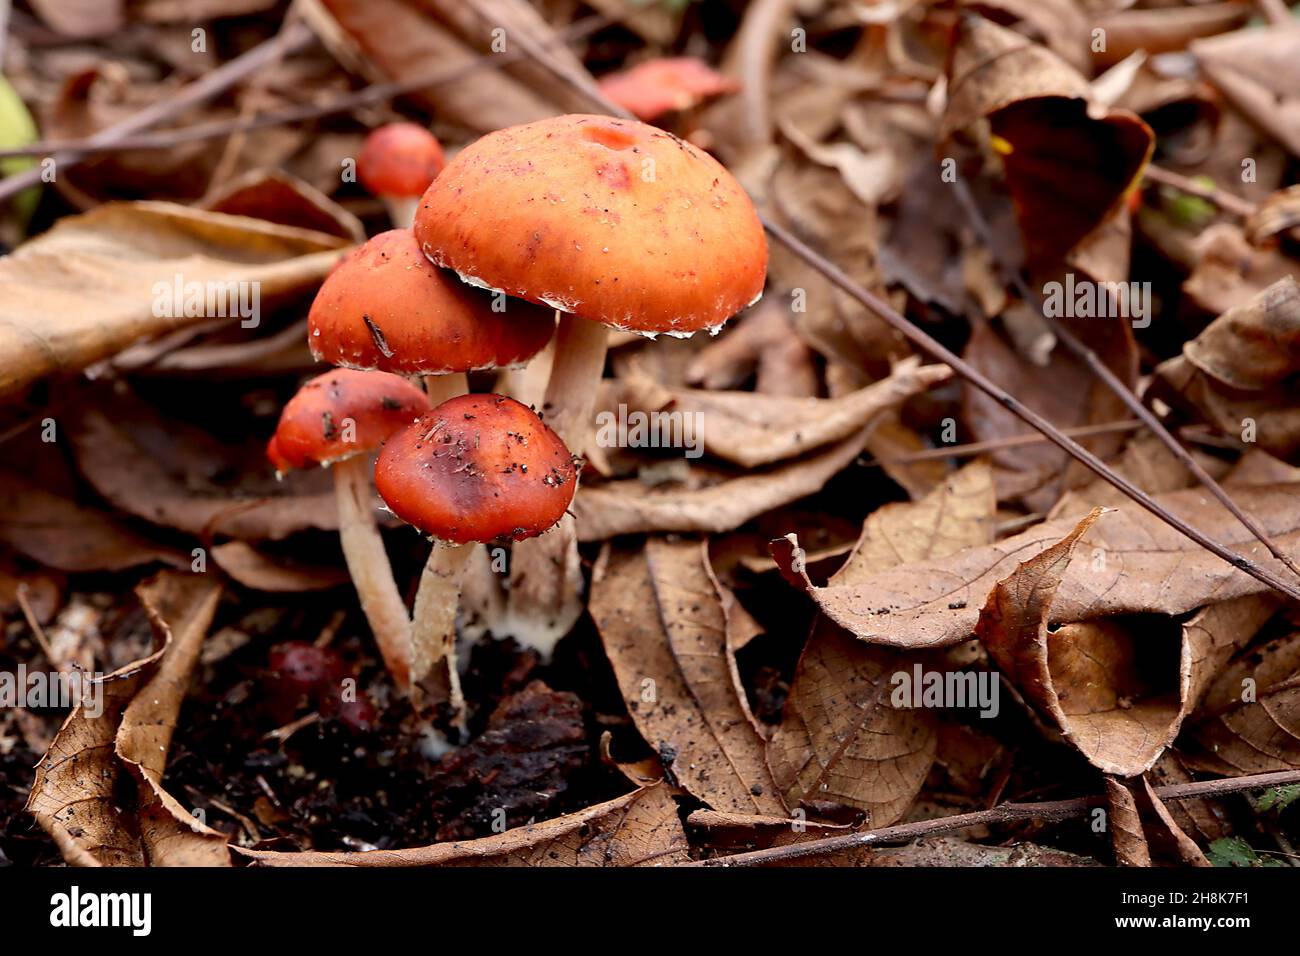 Amanita caesarea il fungo di Caesar – fungo commestibile con cappuccio rosso arancio e crema, novembre, Inghilterra, Regno Unito Foto Stock